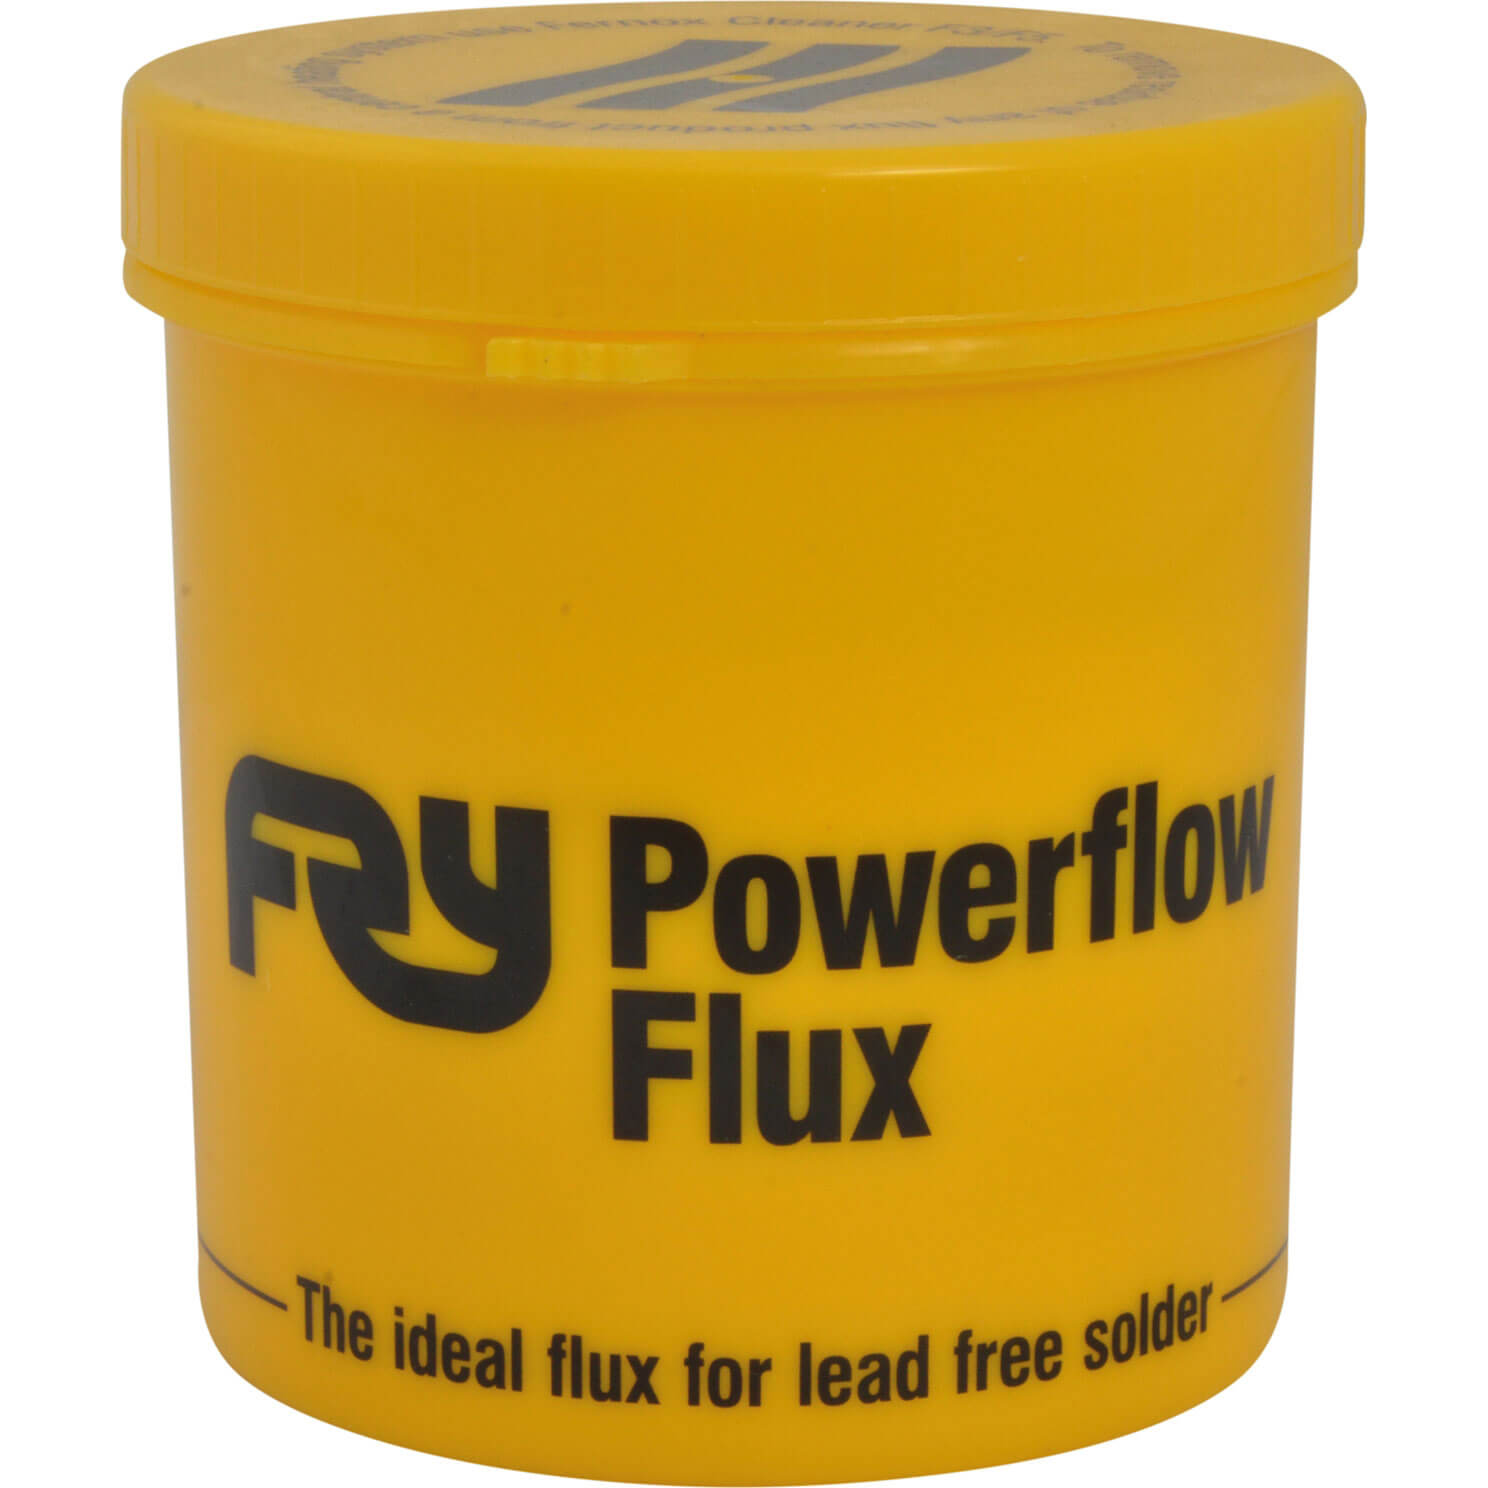 Image of Frys Powerflow Flux 350g